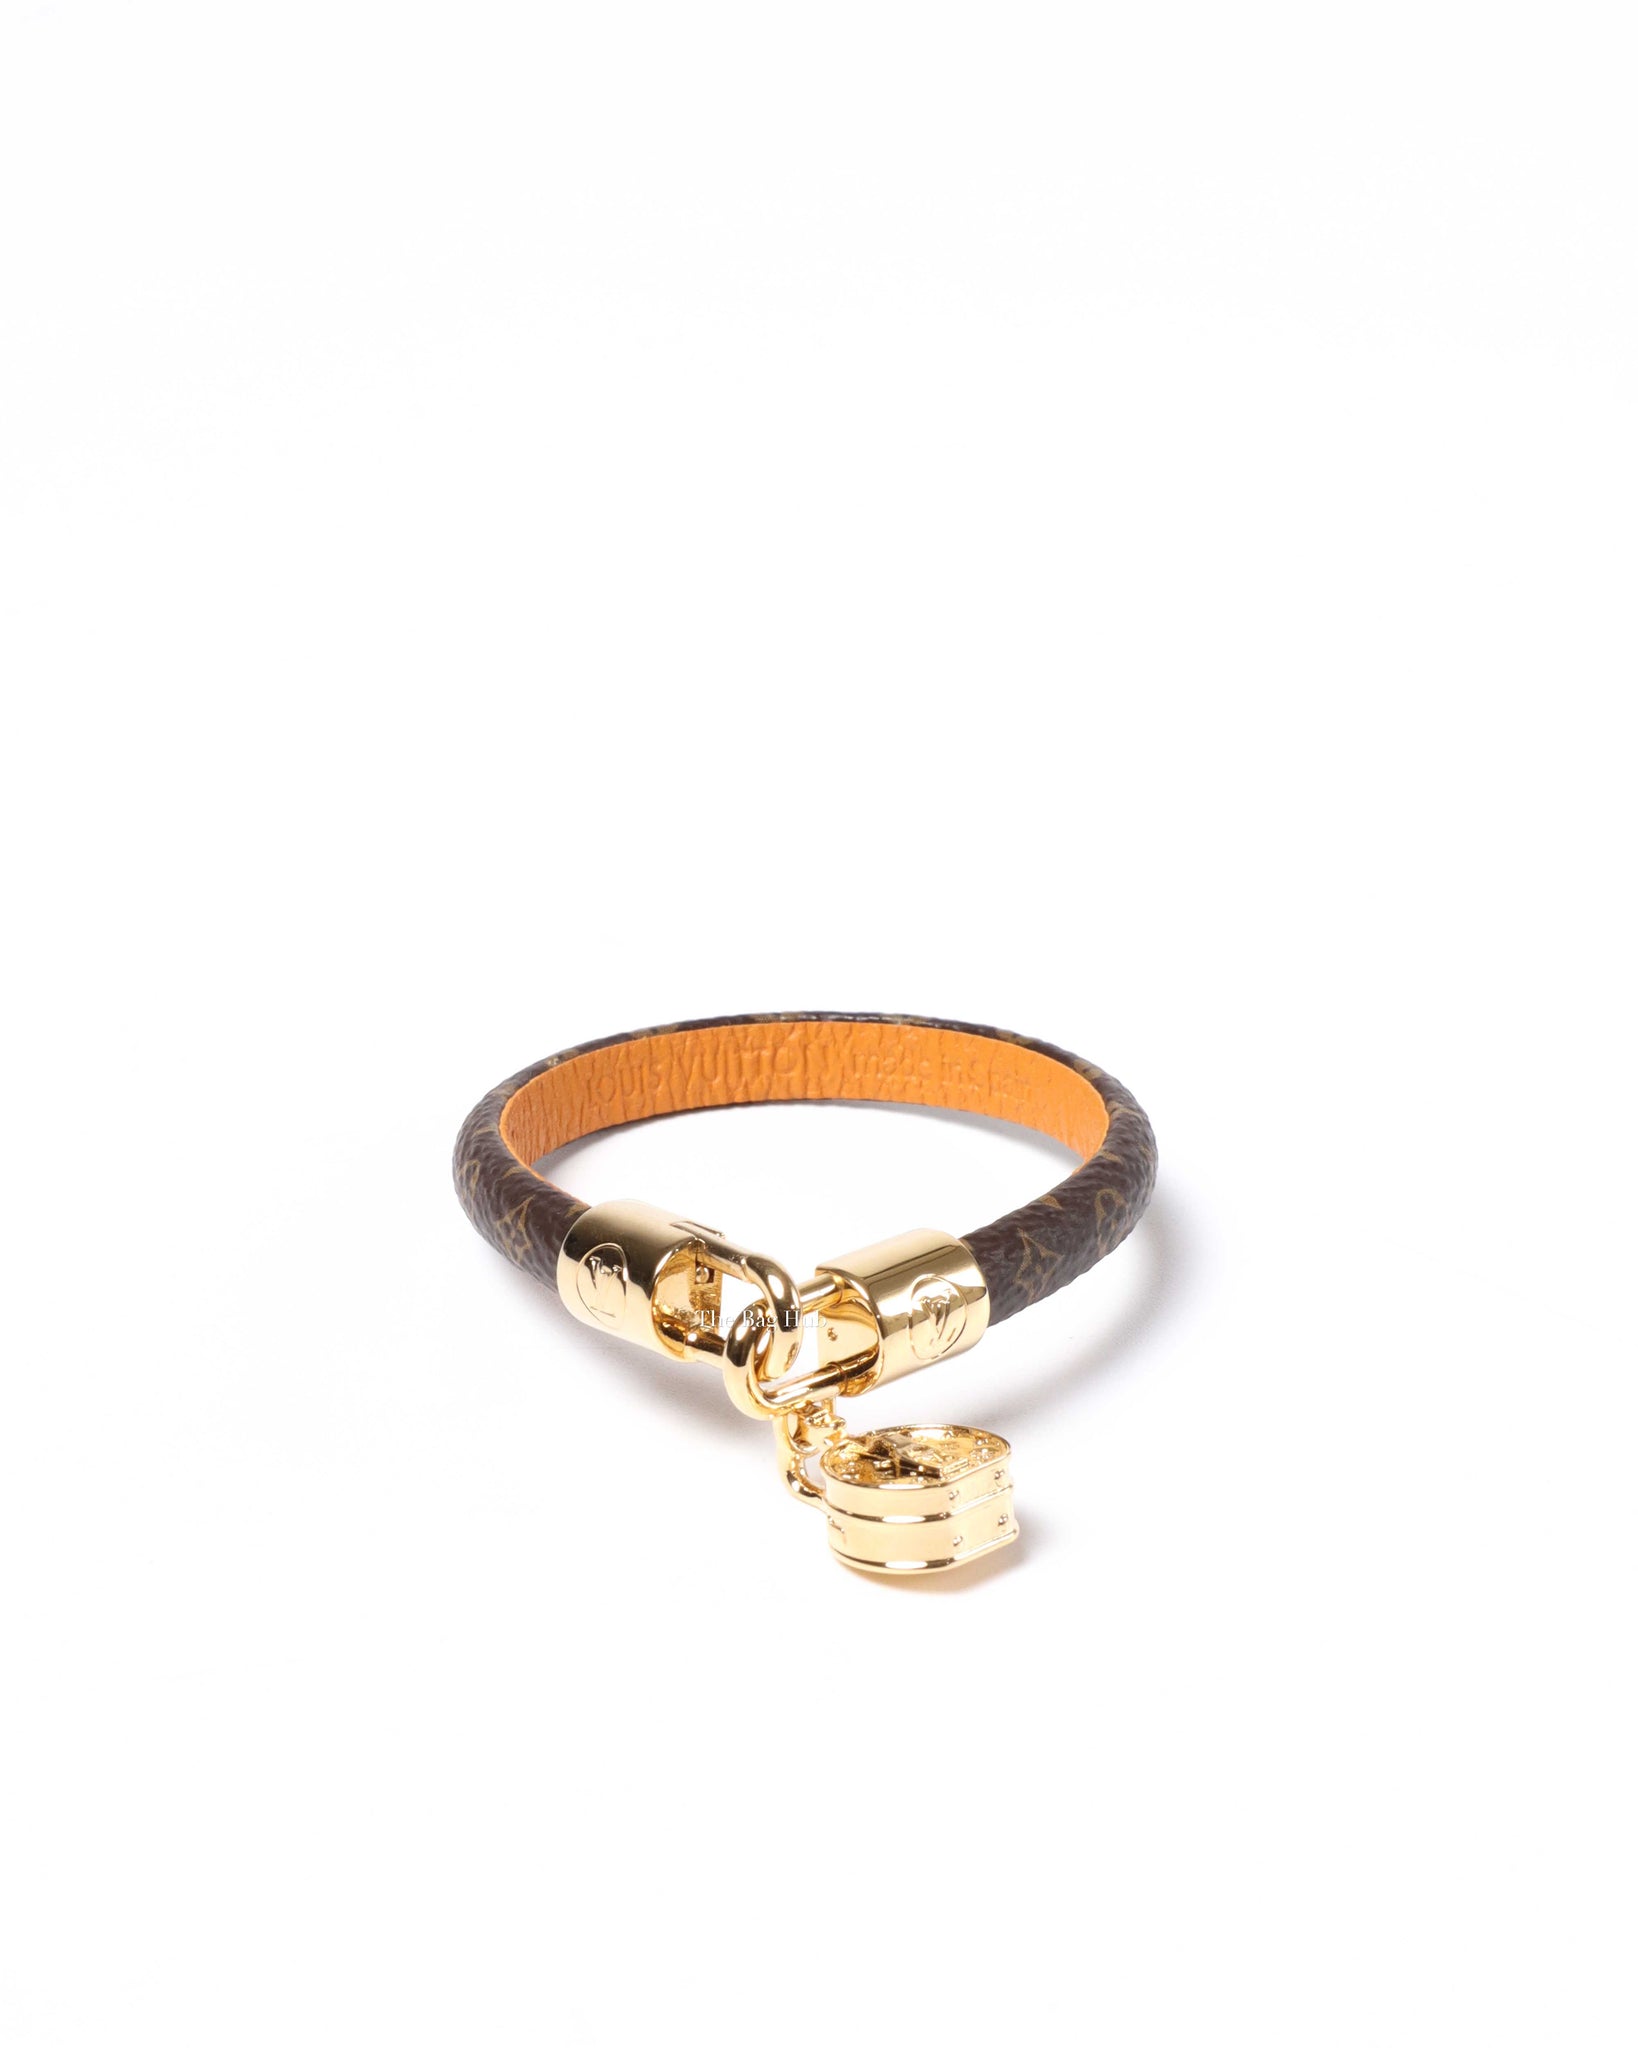 Louis Vuitton Monogram Tribute Bracelet Size 17